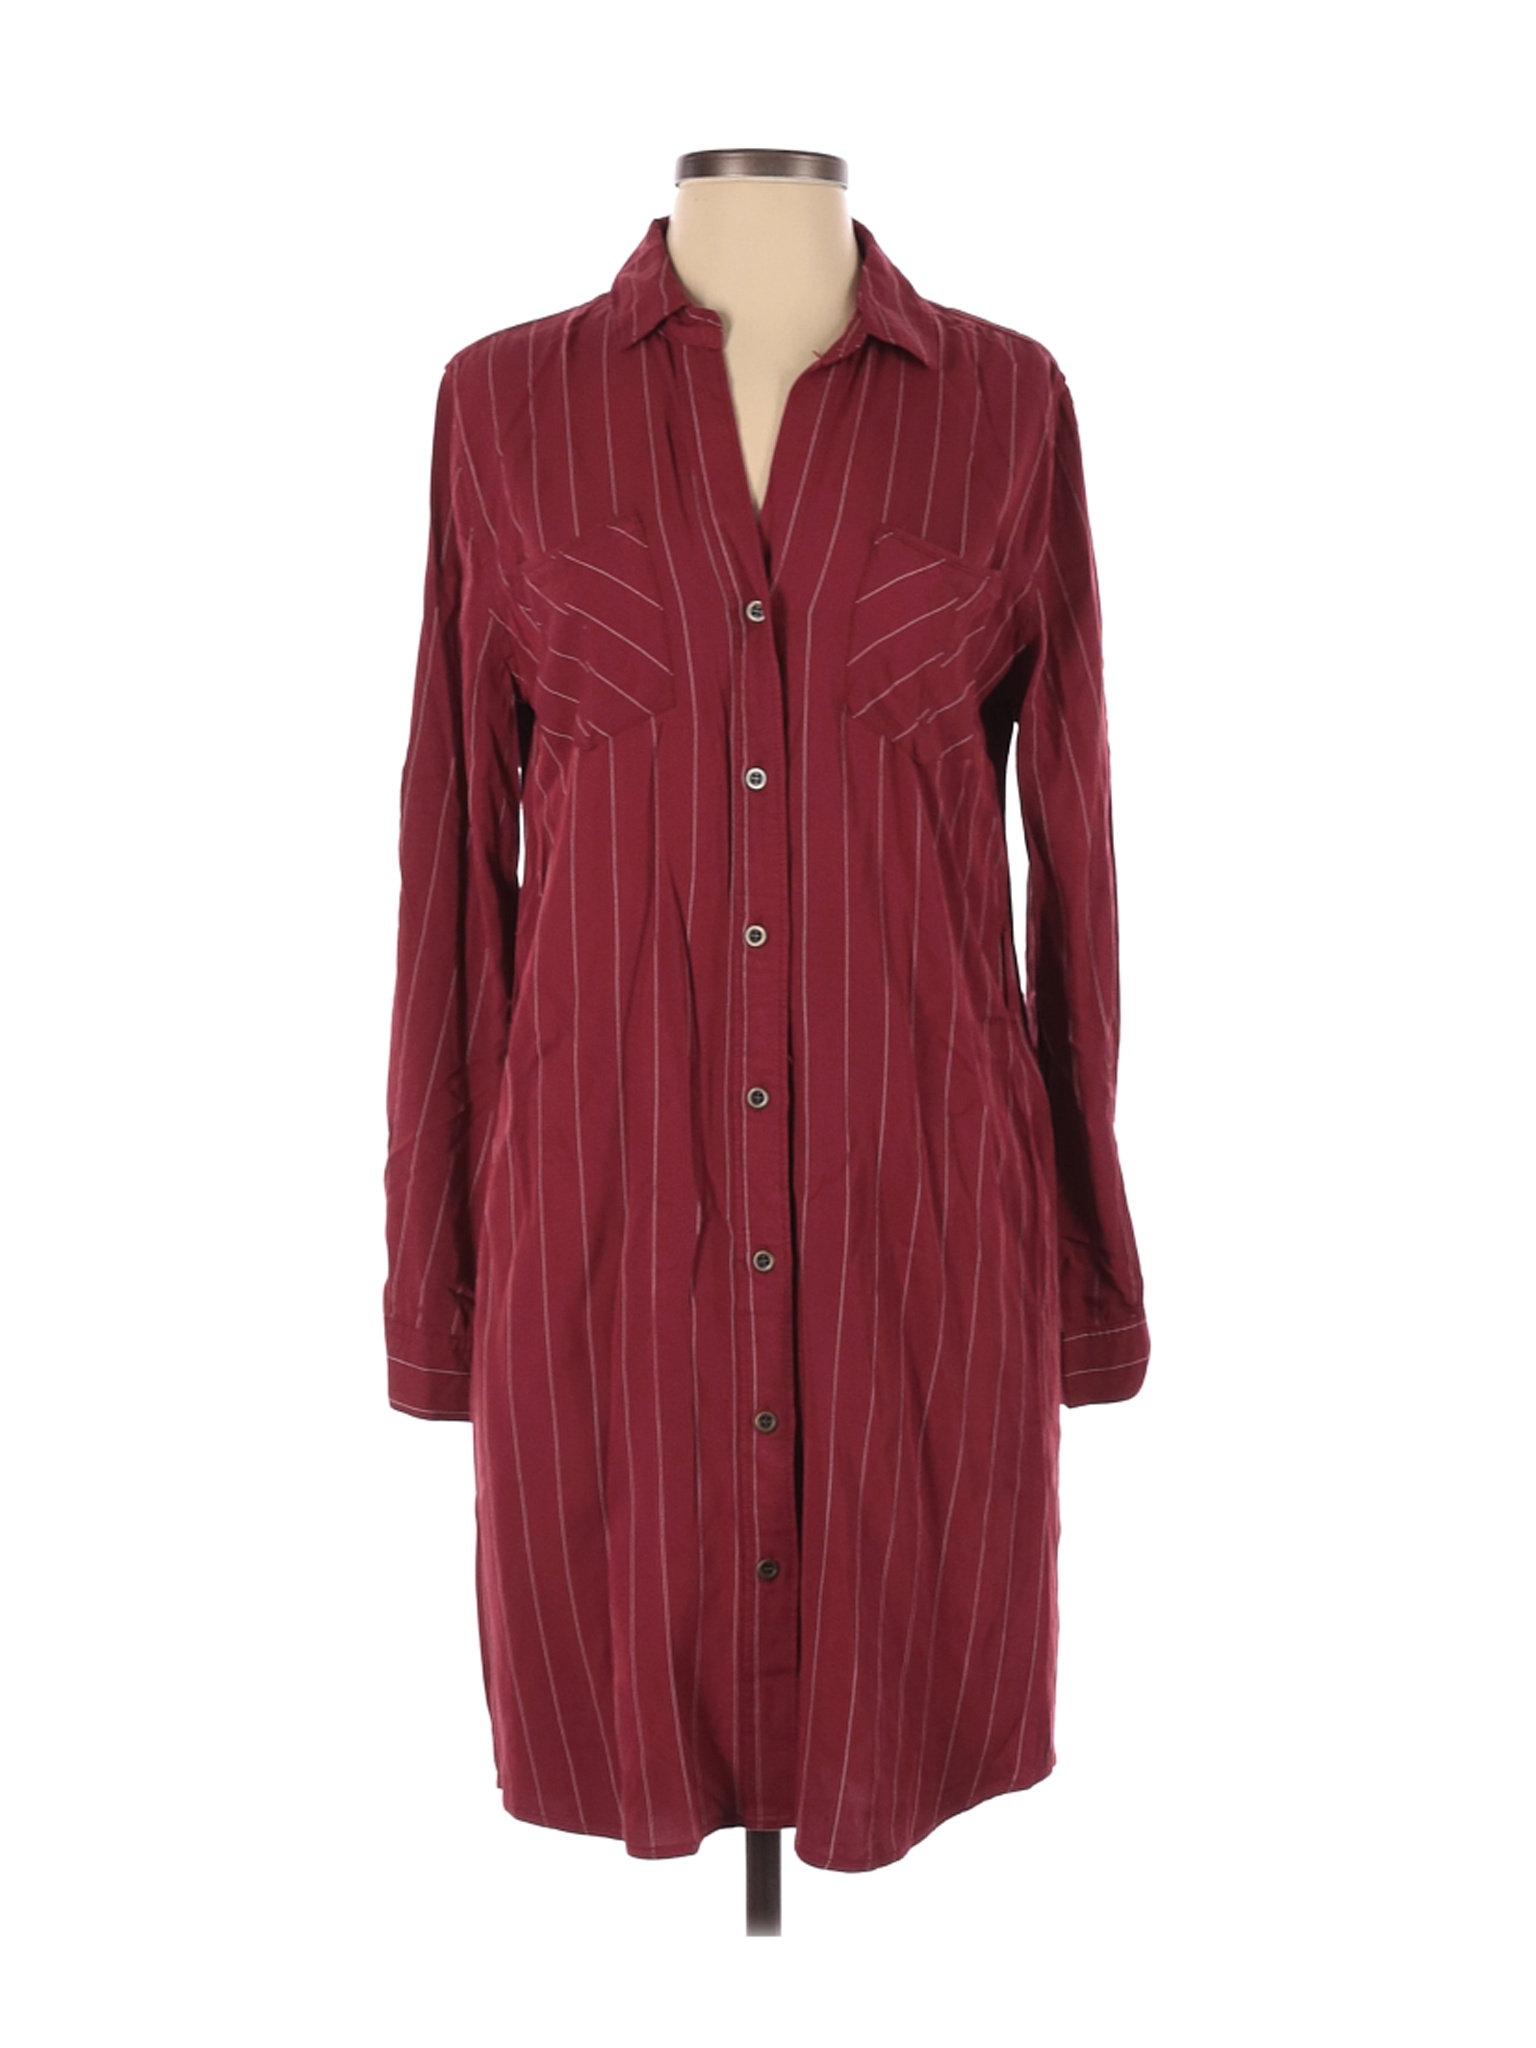 NWT Velvet Heart Women Red Casual Dress XS | eBay